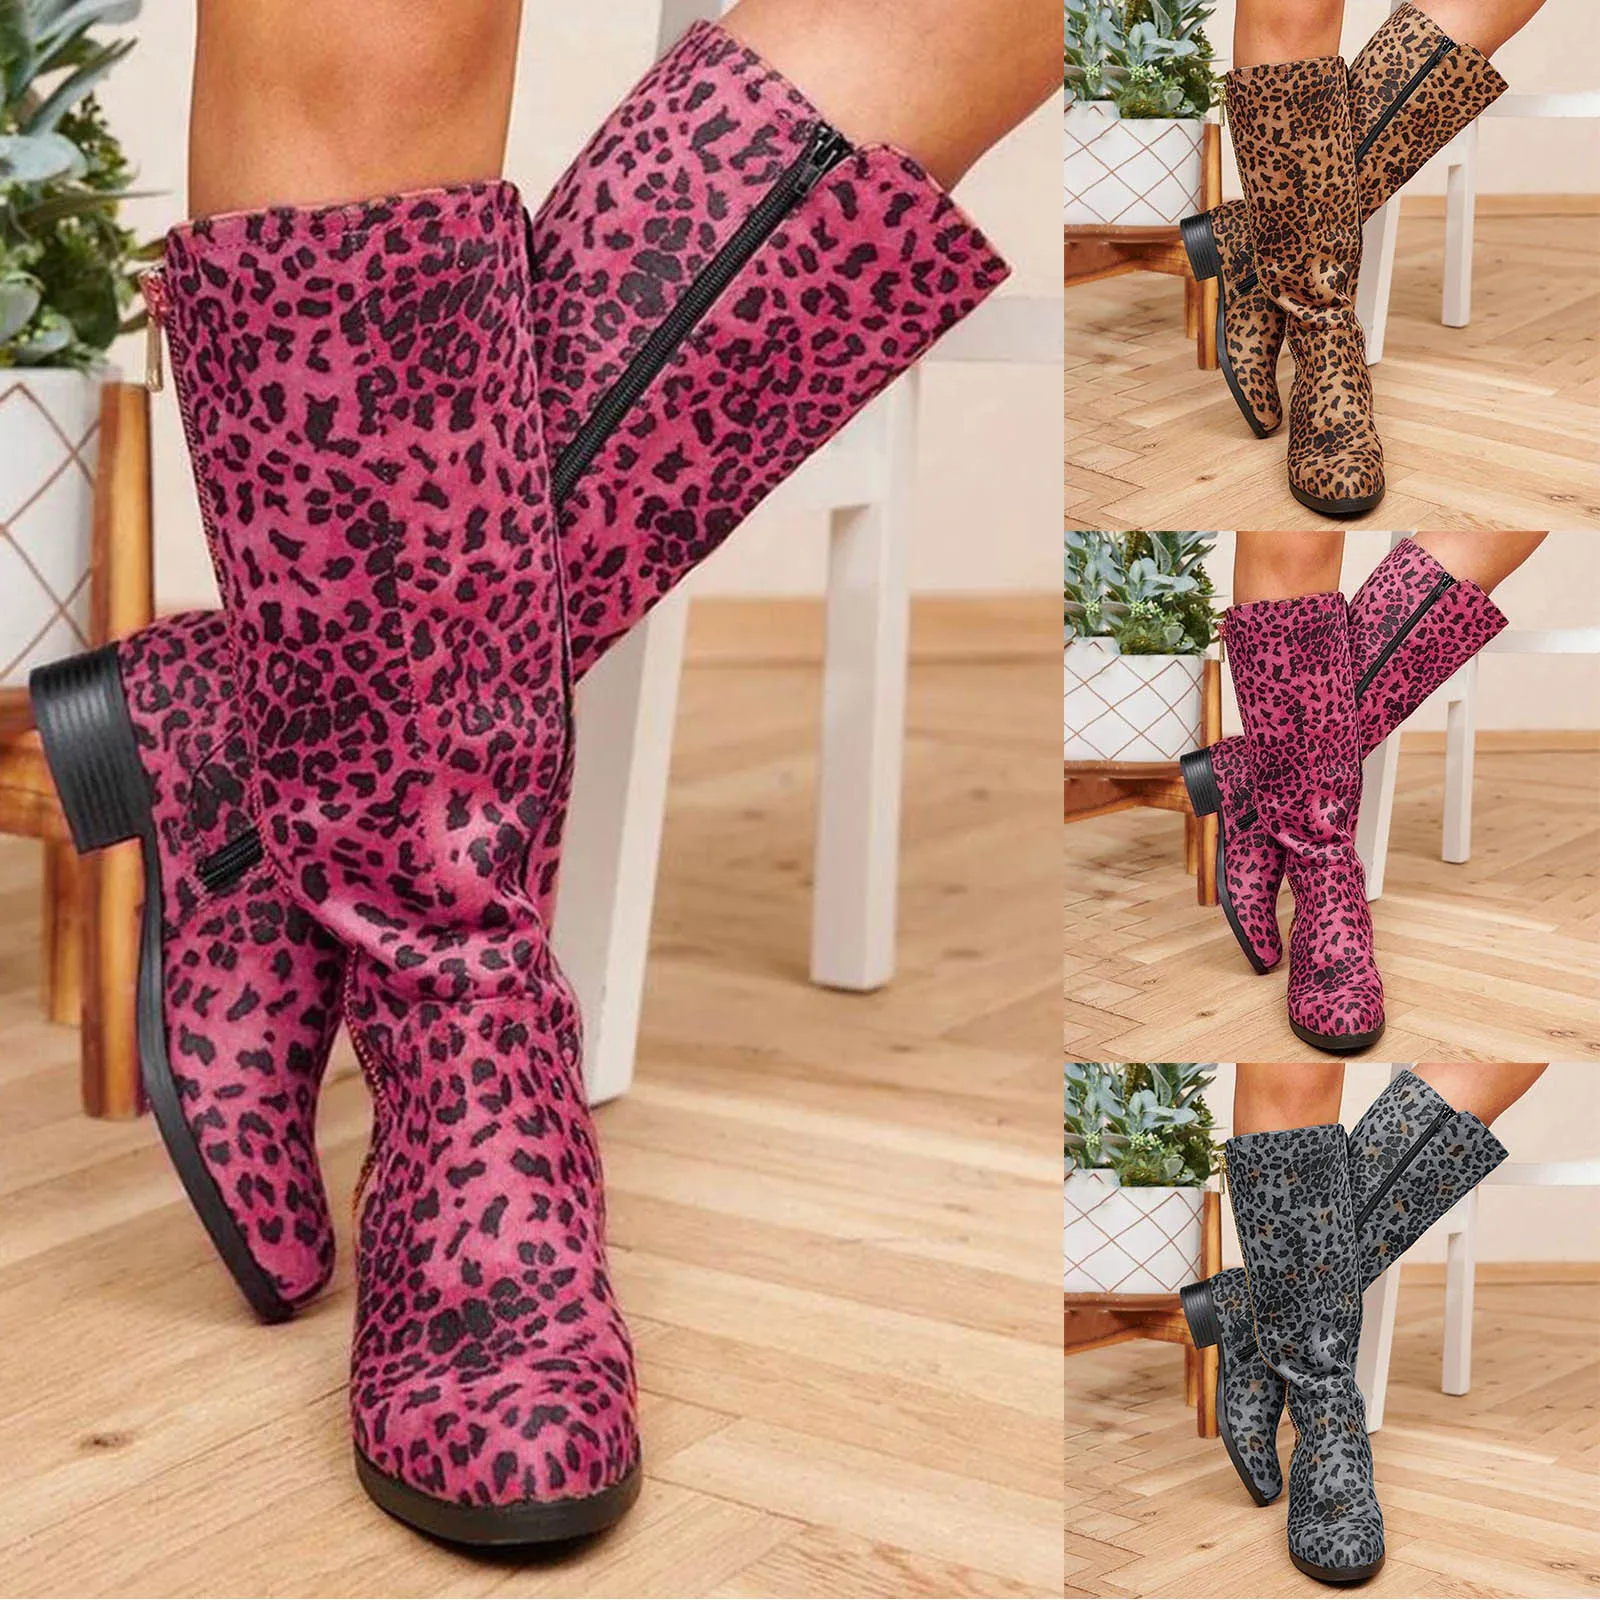 

Women's Fashion High Top Rider Boots Shoes Leopard Print Flock Side Zipper Flat Bottom Boots Autumn Winter Keep Warm Boots botas